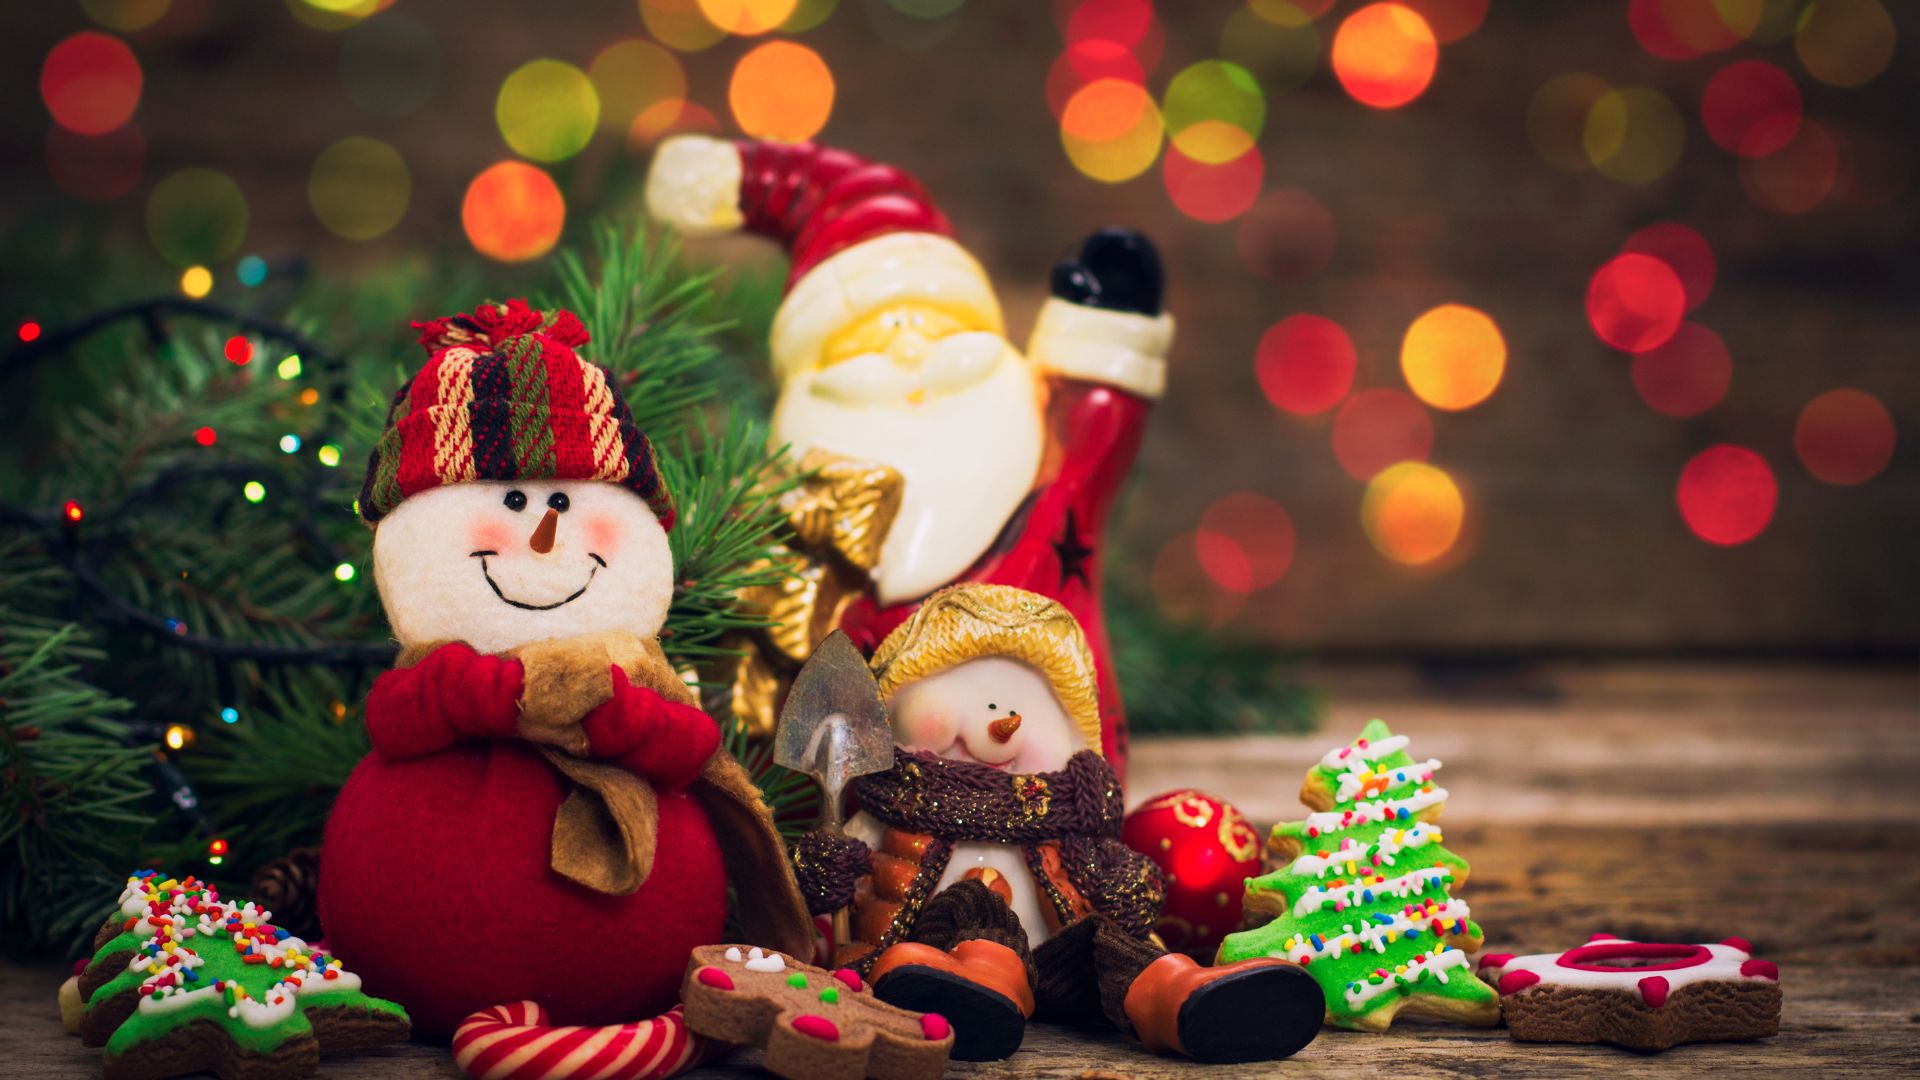 Imagens com elementos natalinos como o boneco de neve, papai noel, boas colaboridas, enfeites e biscoitos doces diversos.